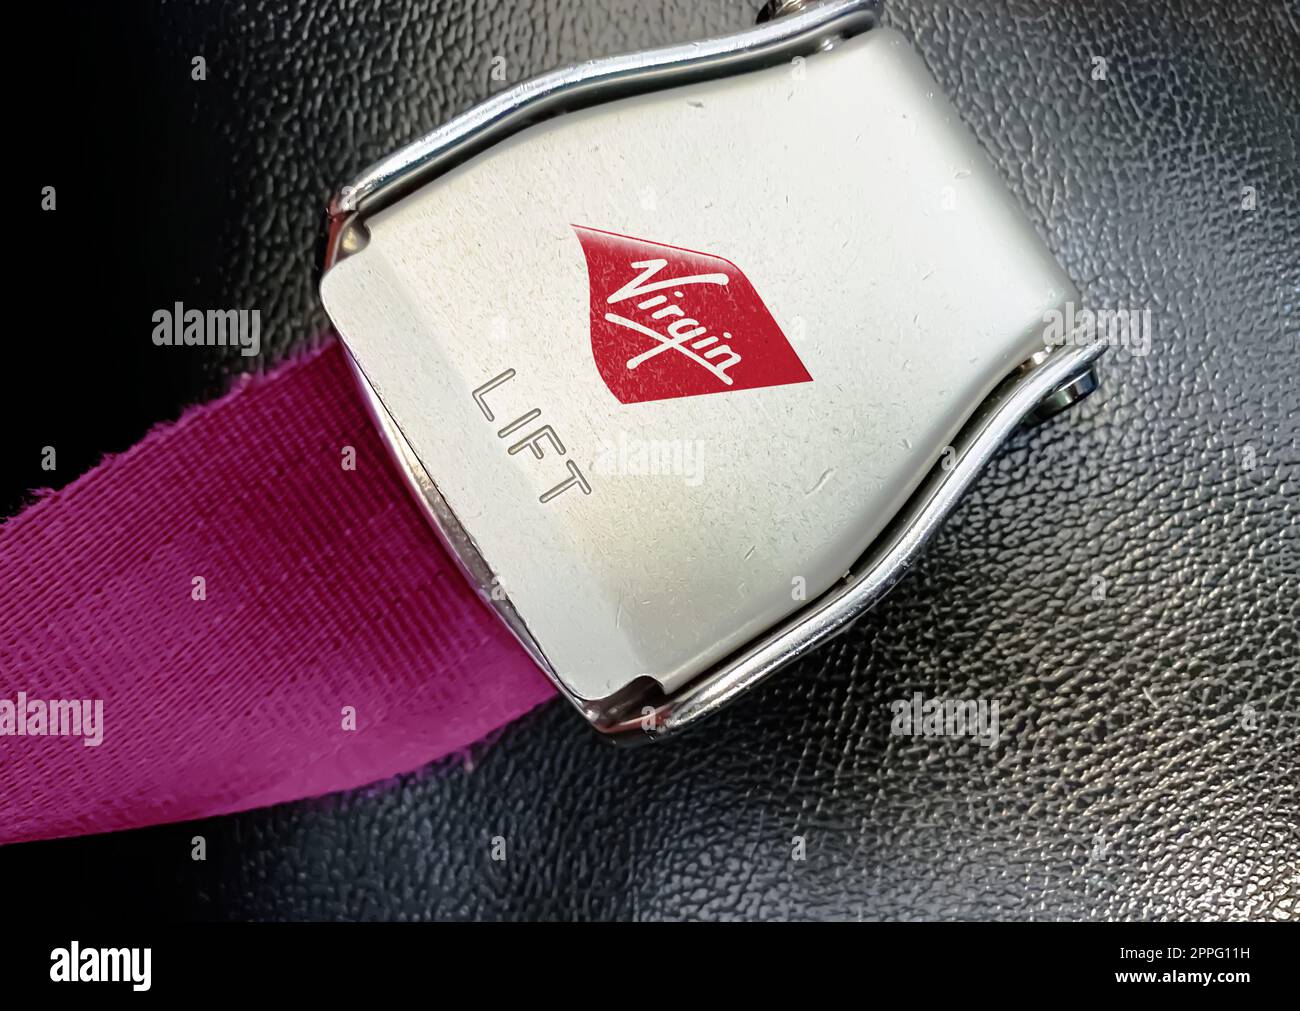 Détail de la boucle de la ceinture de sécurité avec le logo de Virgin Atlantic sur un siège vide Banque D'Images